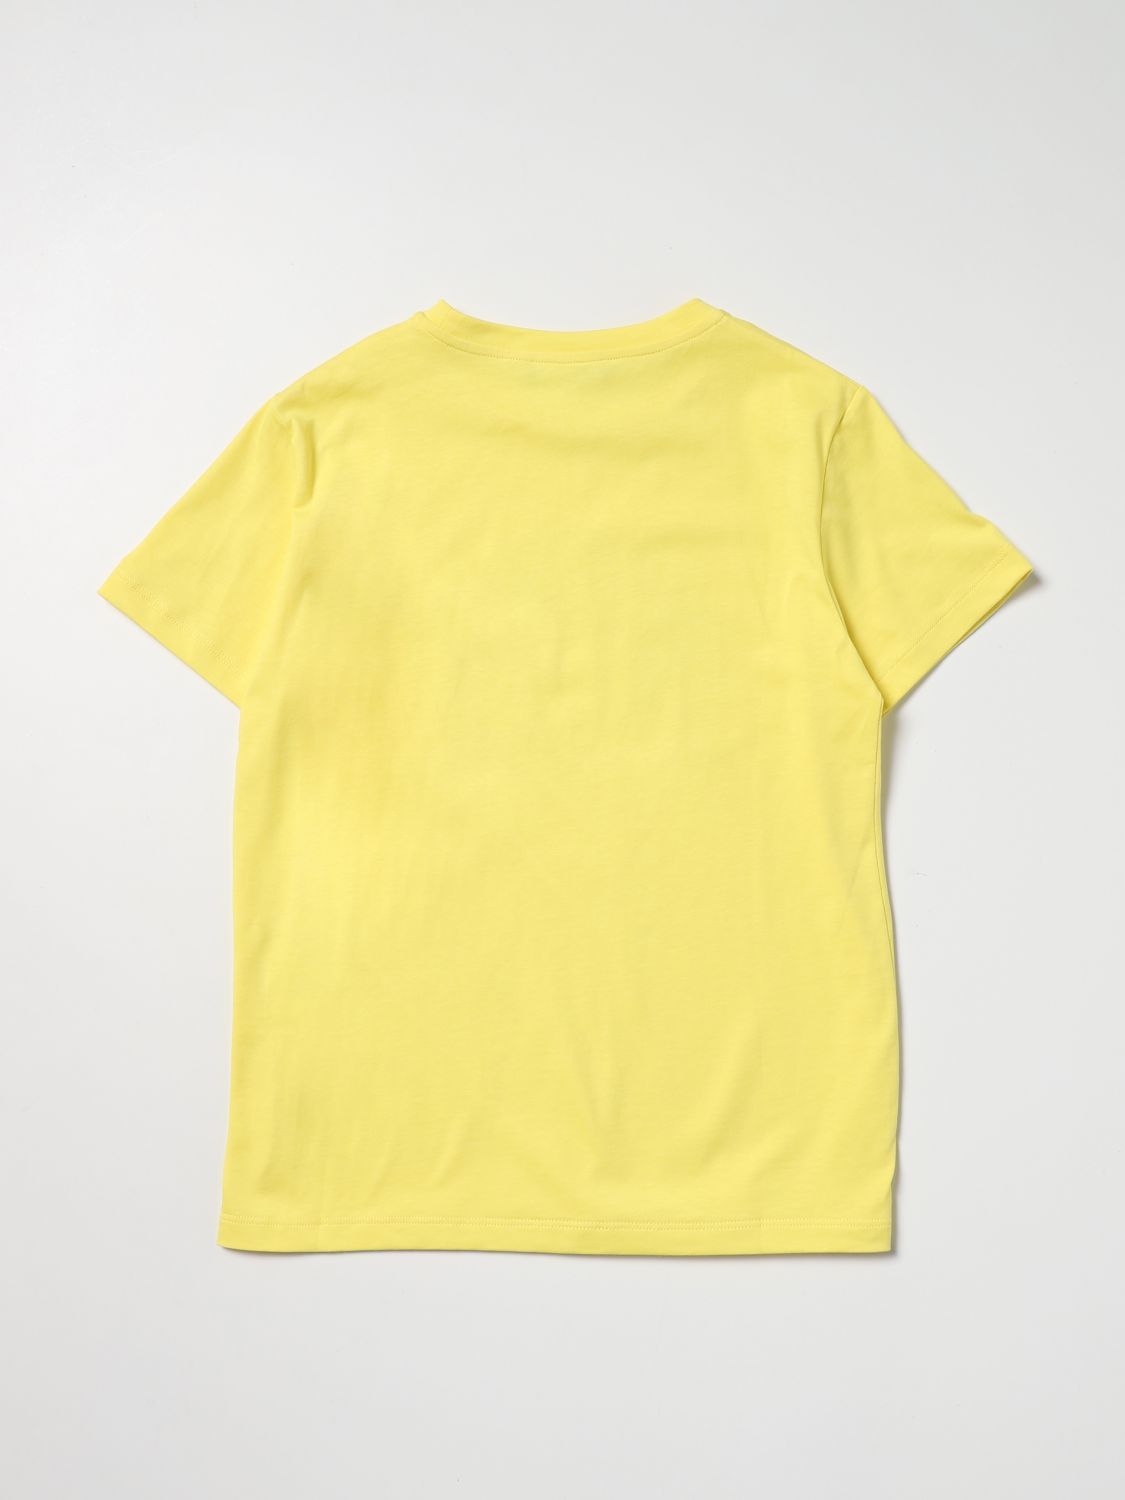 T-Shirt Young Versace: Young Versace Mädchen T-Shirt gelb 2